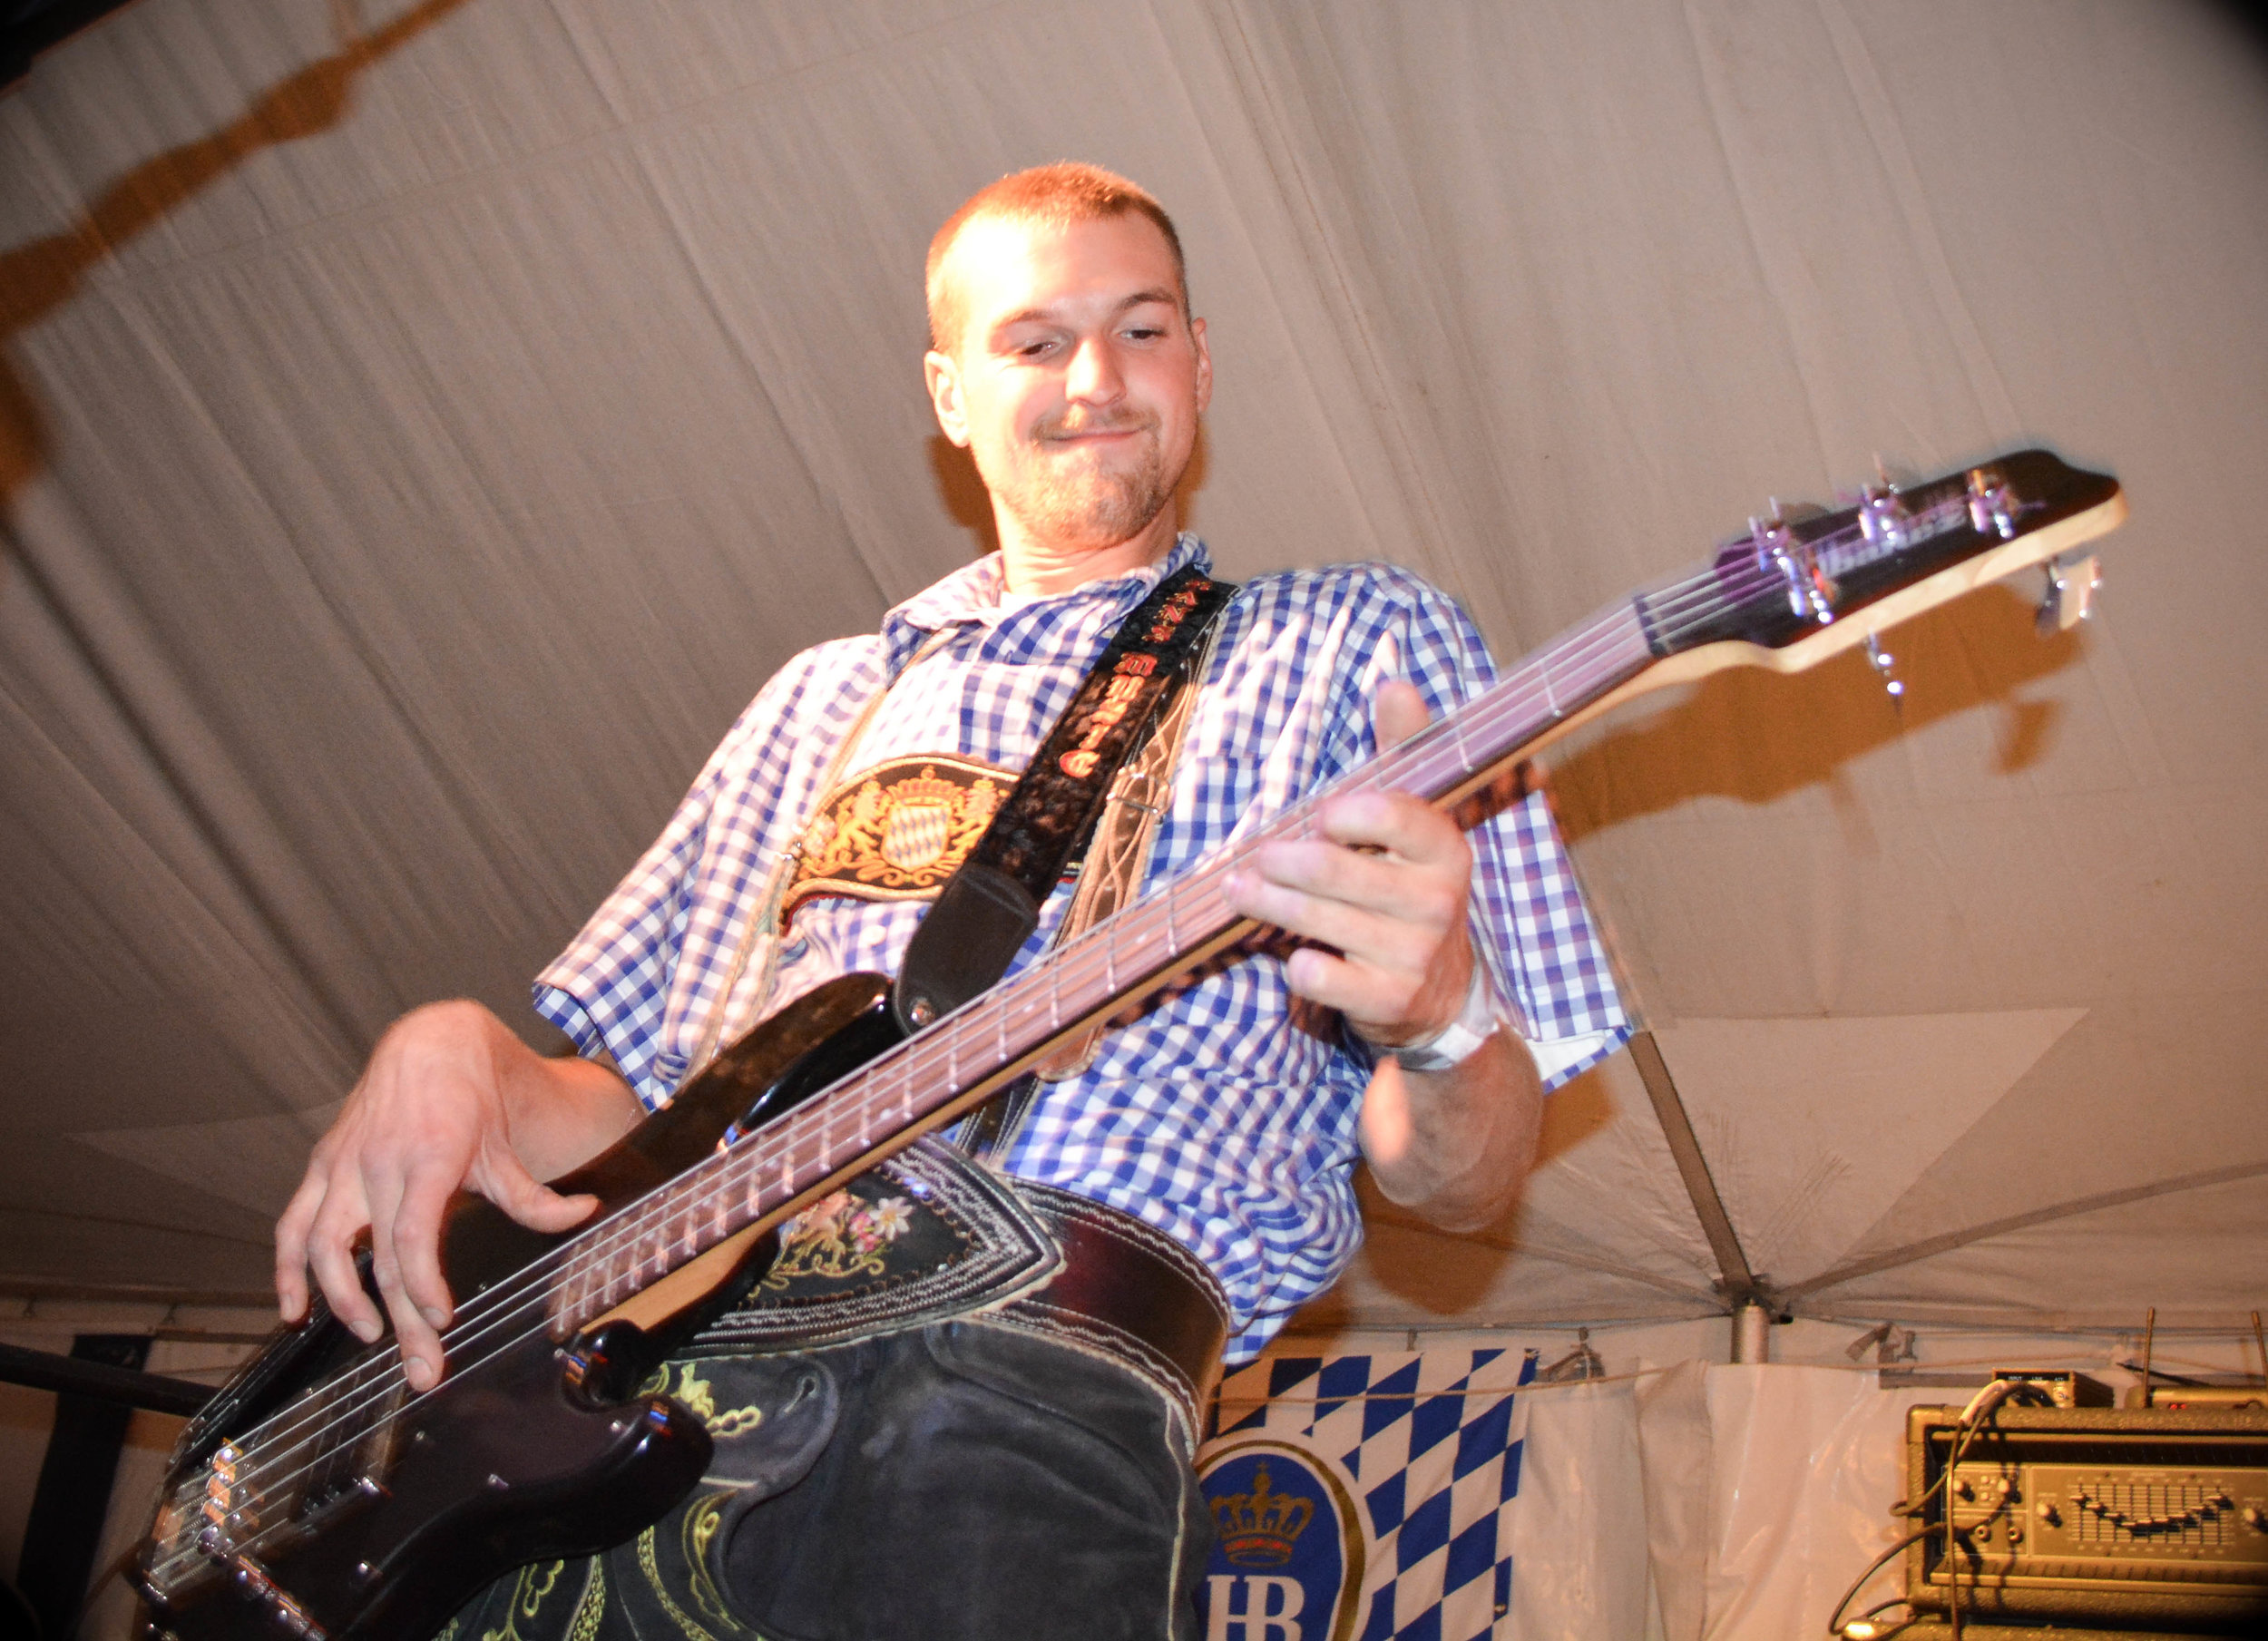  Erik Rainer, Leavenworth Oktoberfest 2014 